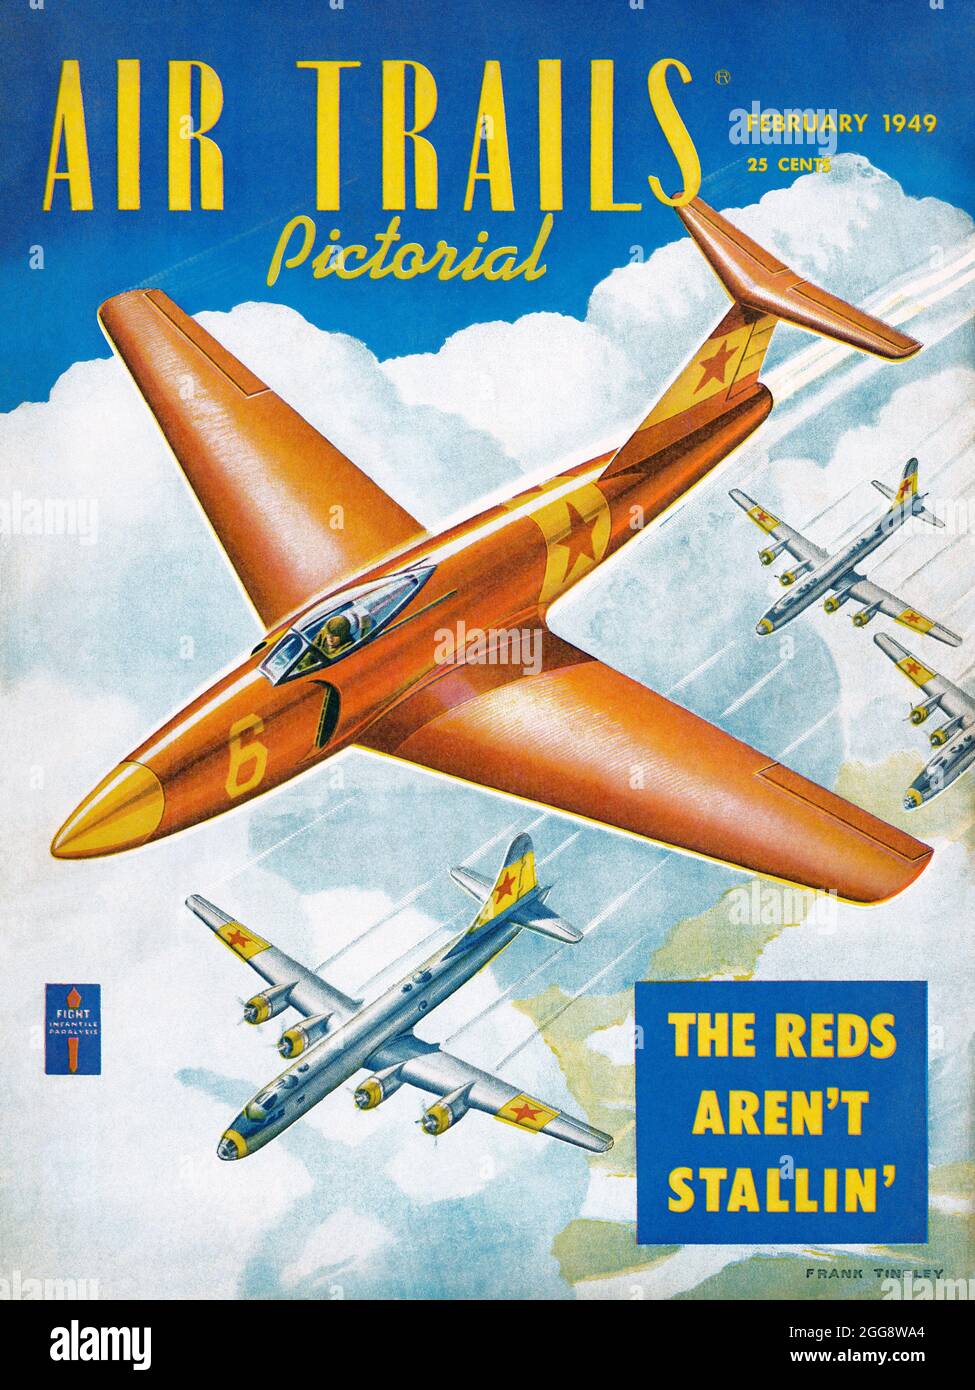 Das Titelbild der Vintage-Zeitschrift Air Trails für Februar 1949 zeigt ein sowjetisches Düsenjägerflugzeug, das Bomber begleitet. Stockfoto